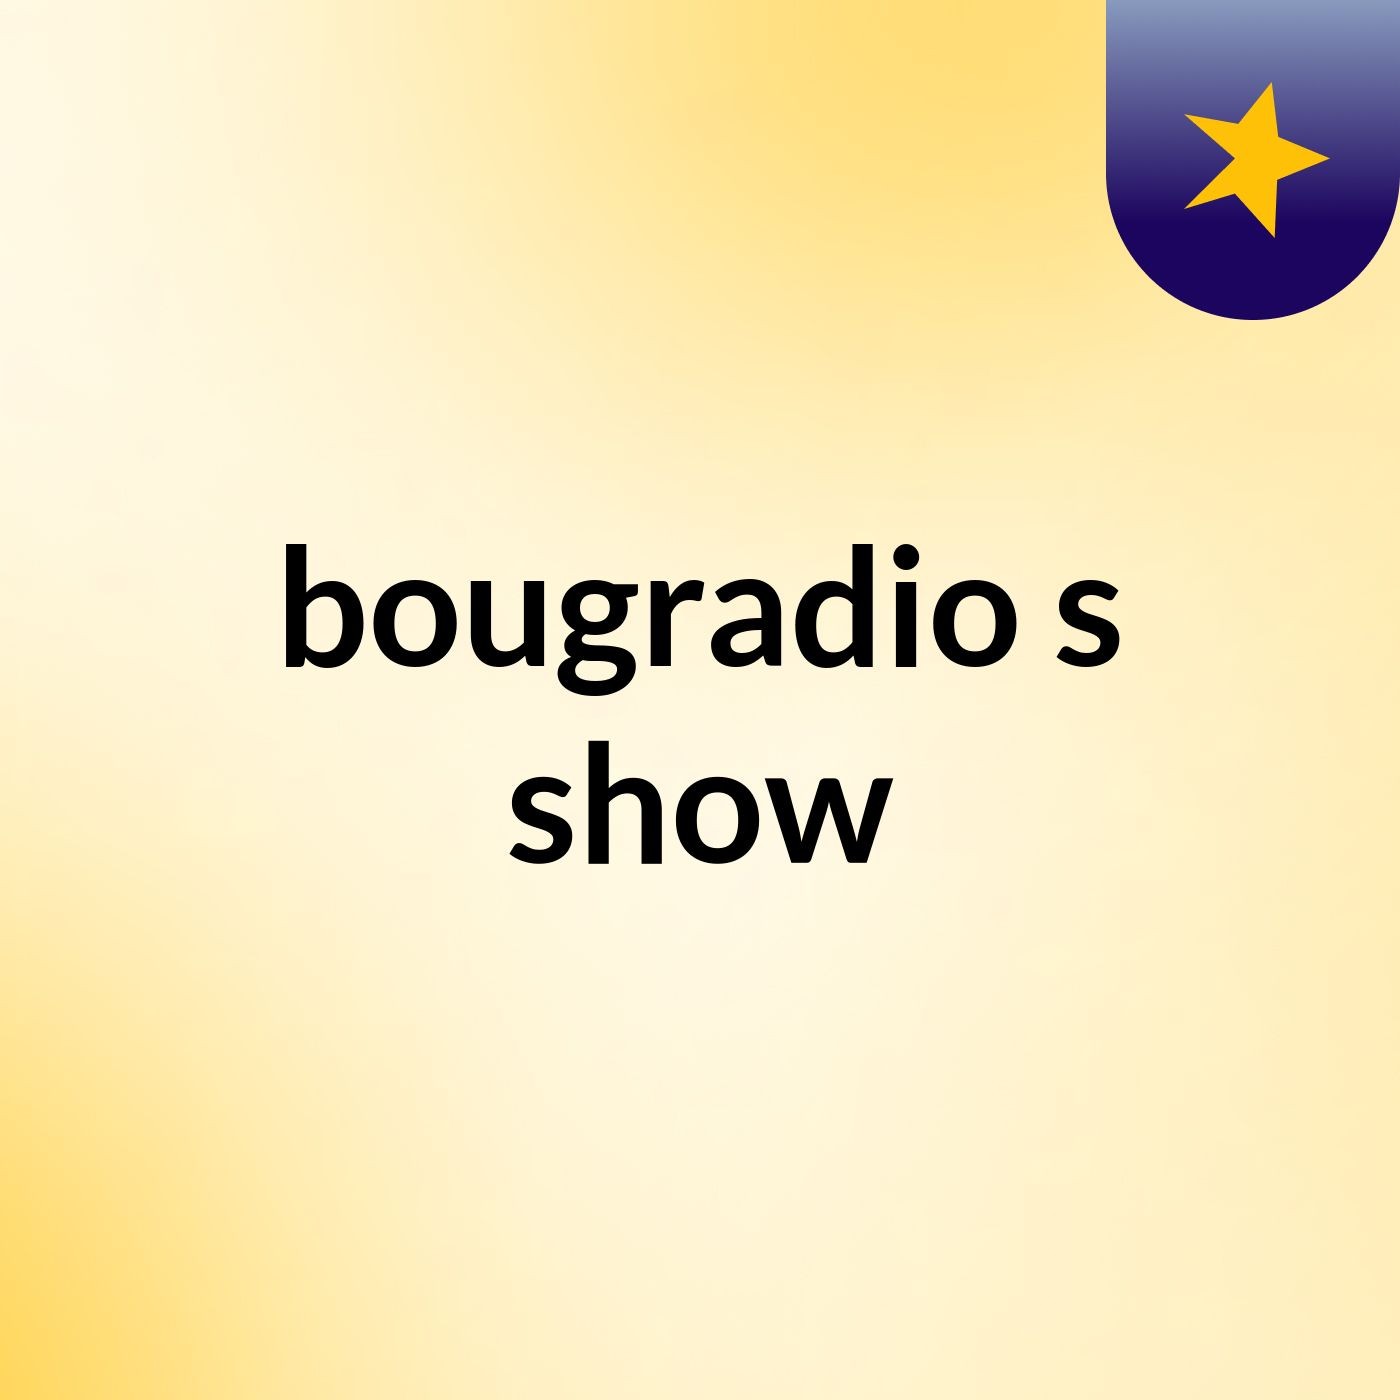 bougradio's show